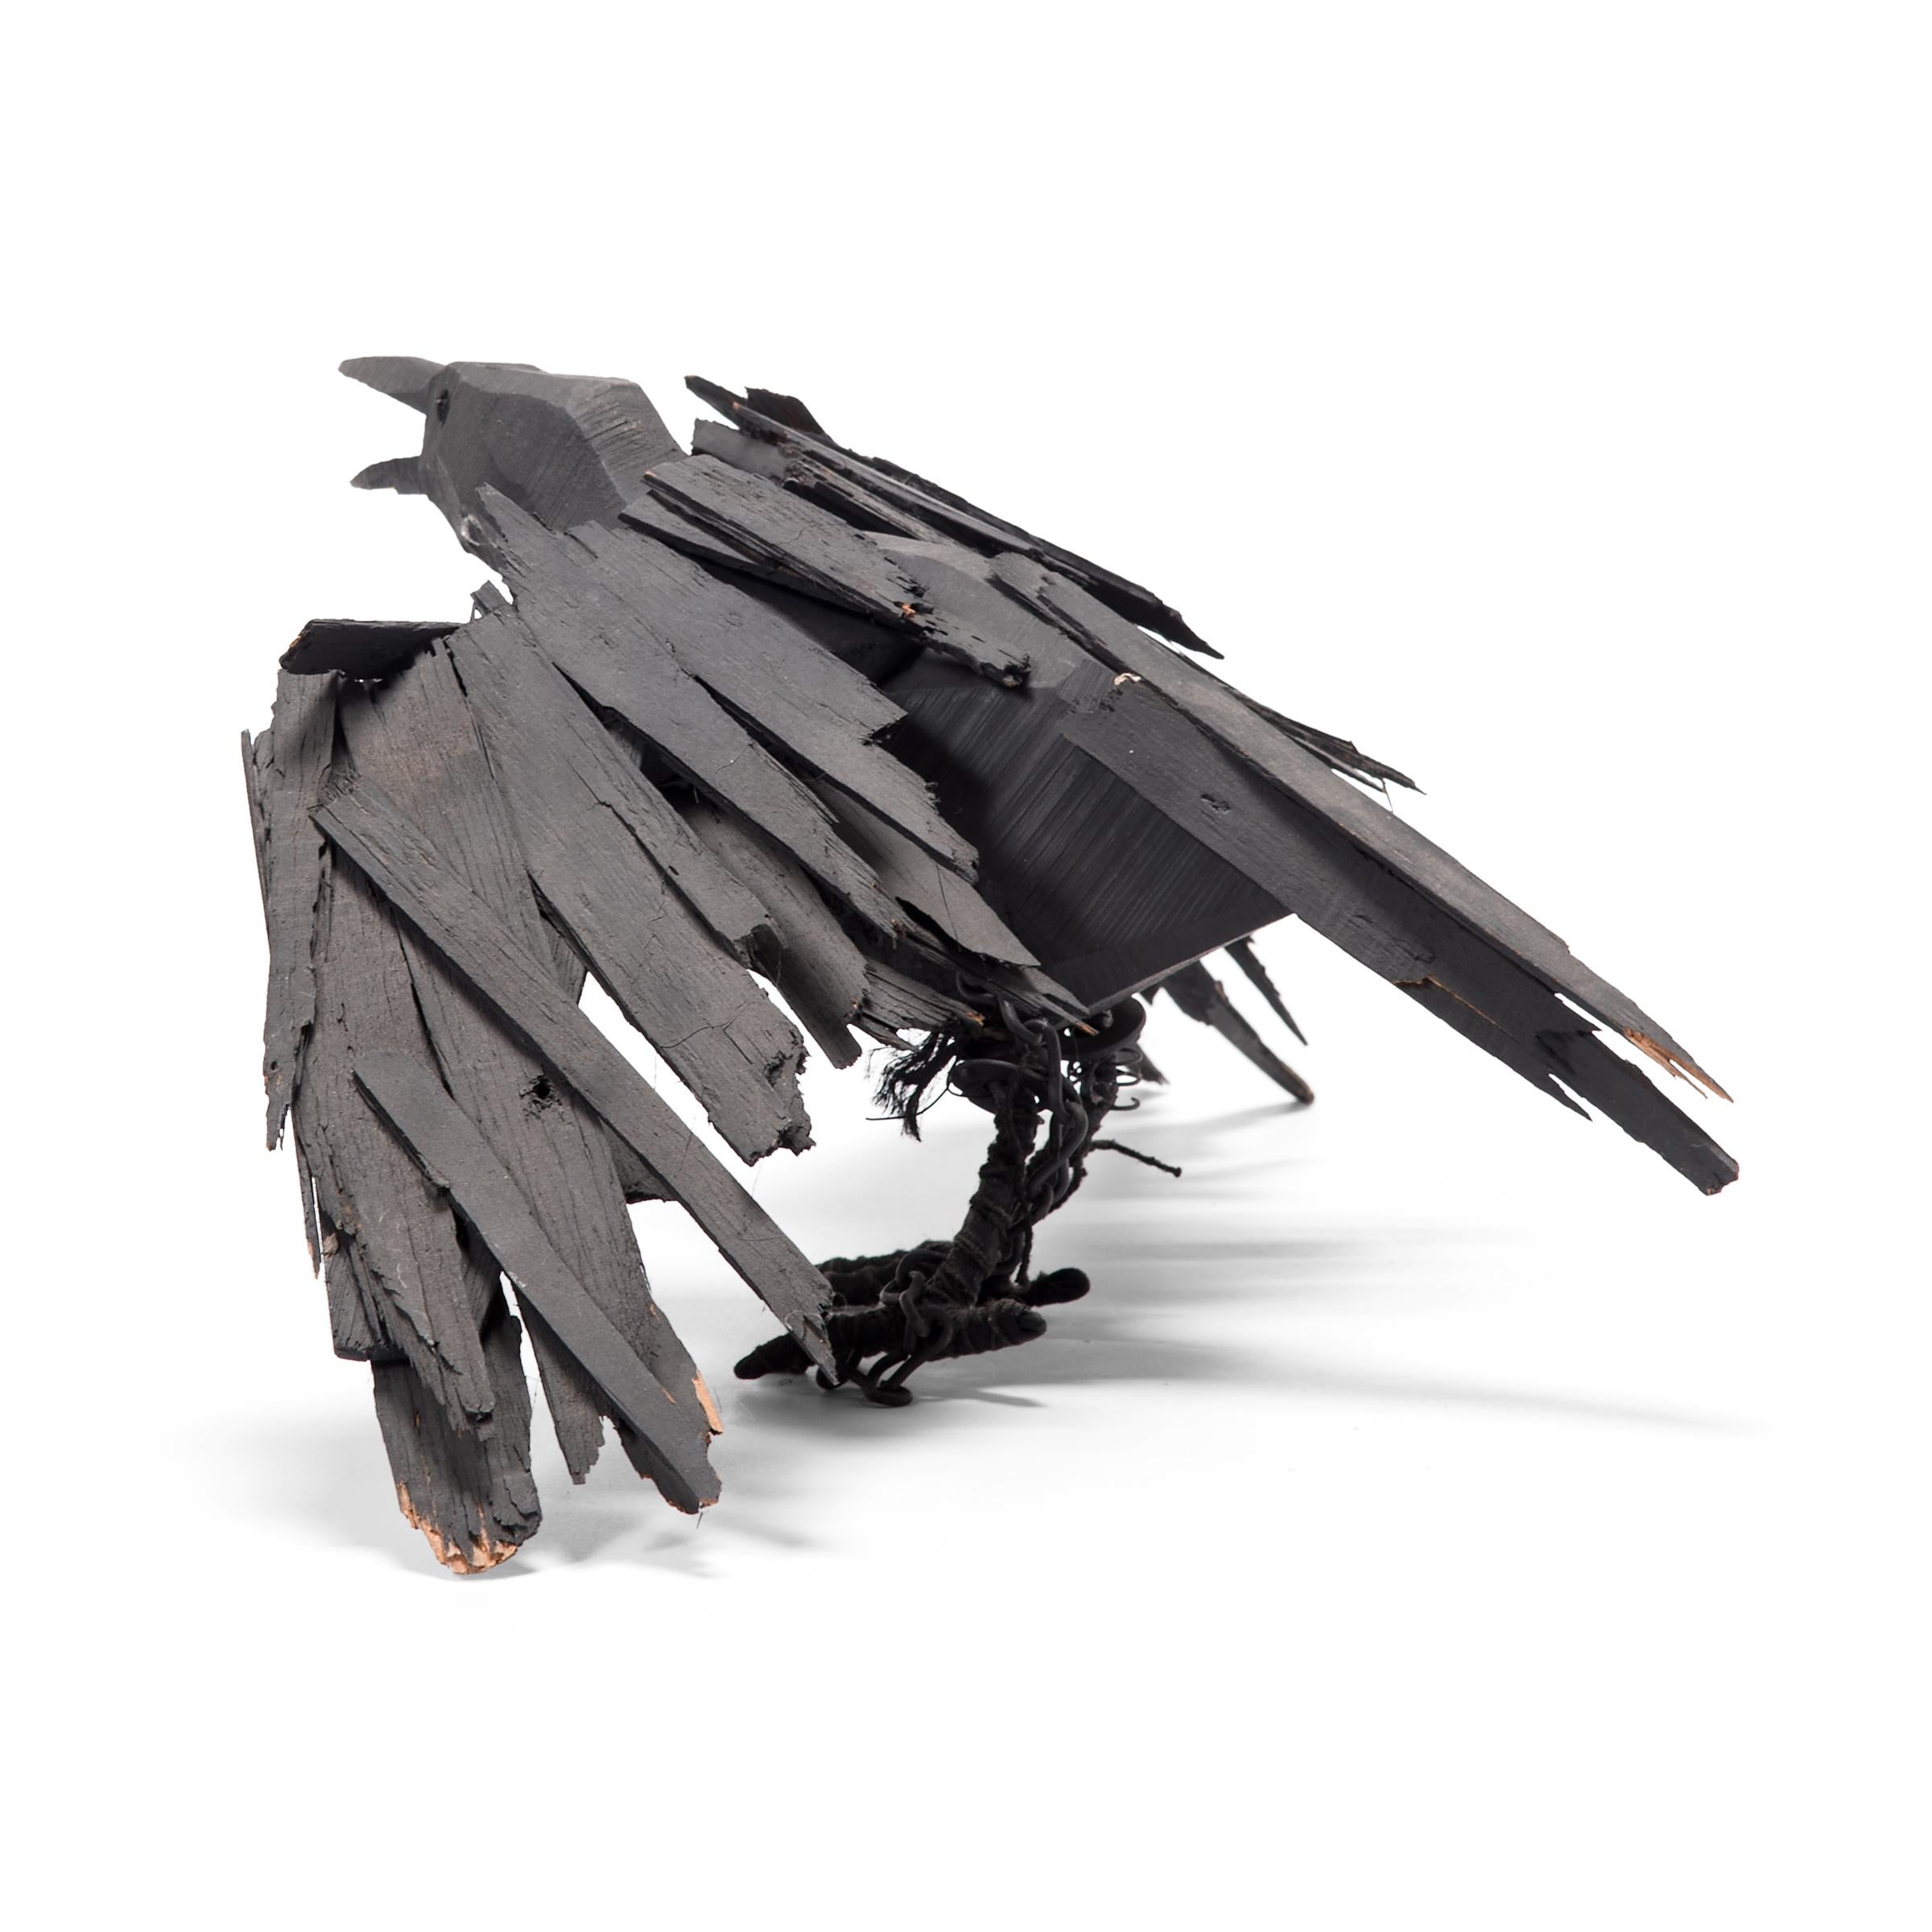 Diese hölzerne Krähe aus dem späten 20. Jahrhundert ist ein reizvolles Beispiel naiver amerikanischer Bildhauerkunst, reich strukturiert und von skurrilem Reiz. Mitten im Krächzen sind die Flügel der Krähe ausgestreckt, bereit, in die Luft zu gehen.